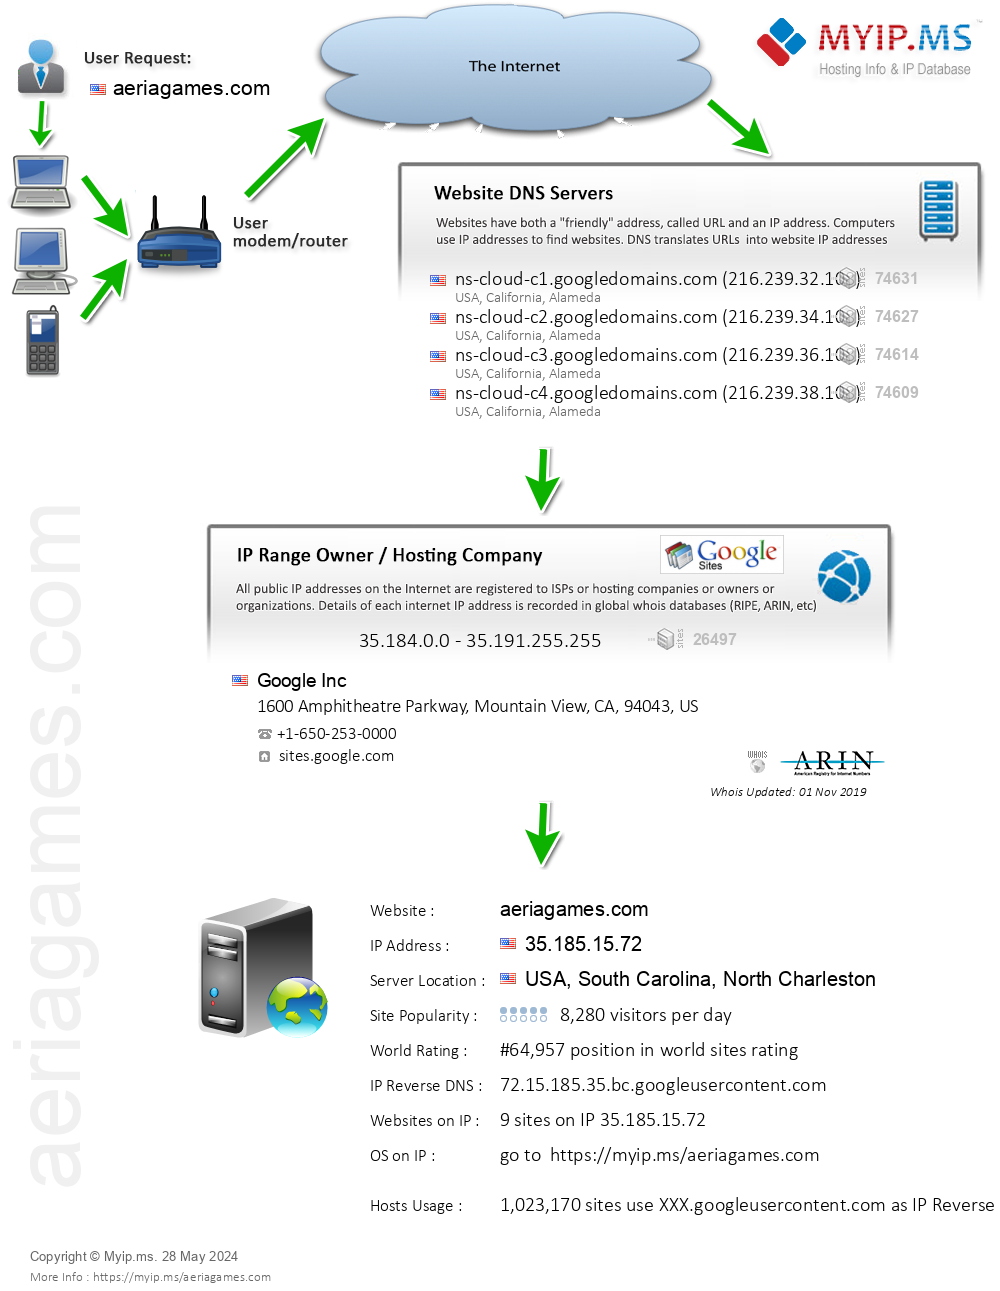 Aeriagames.com - Website Hosting Visual IP Diagram